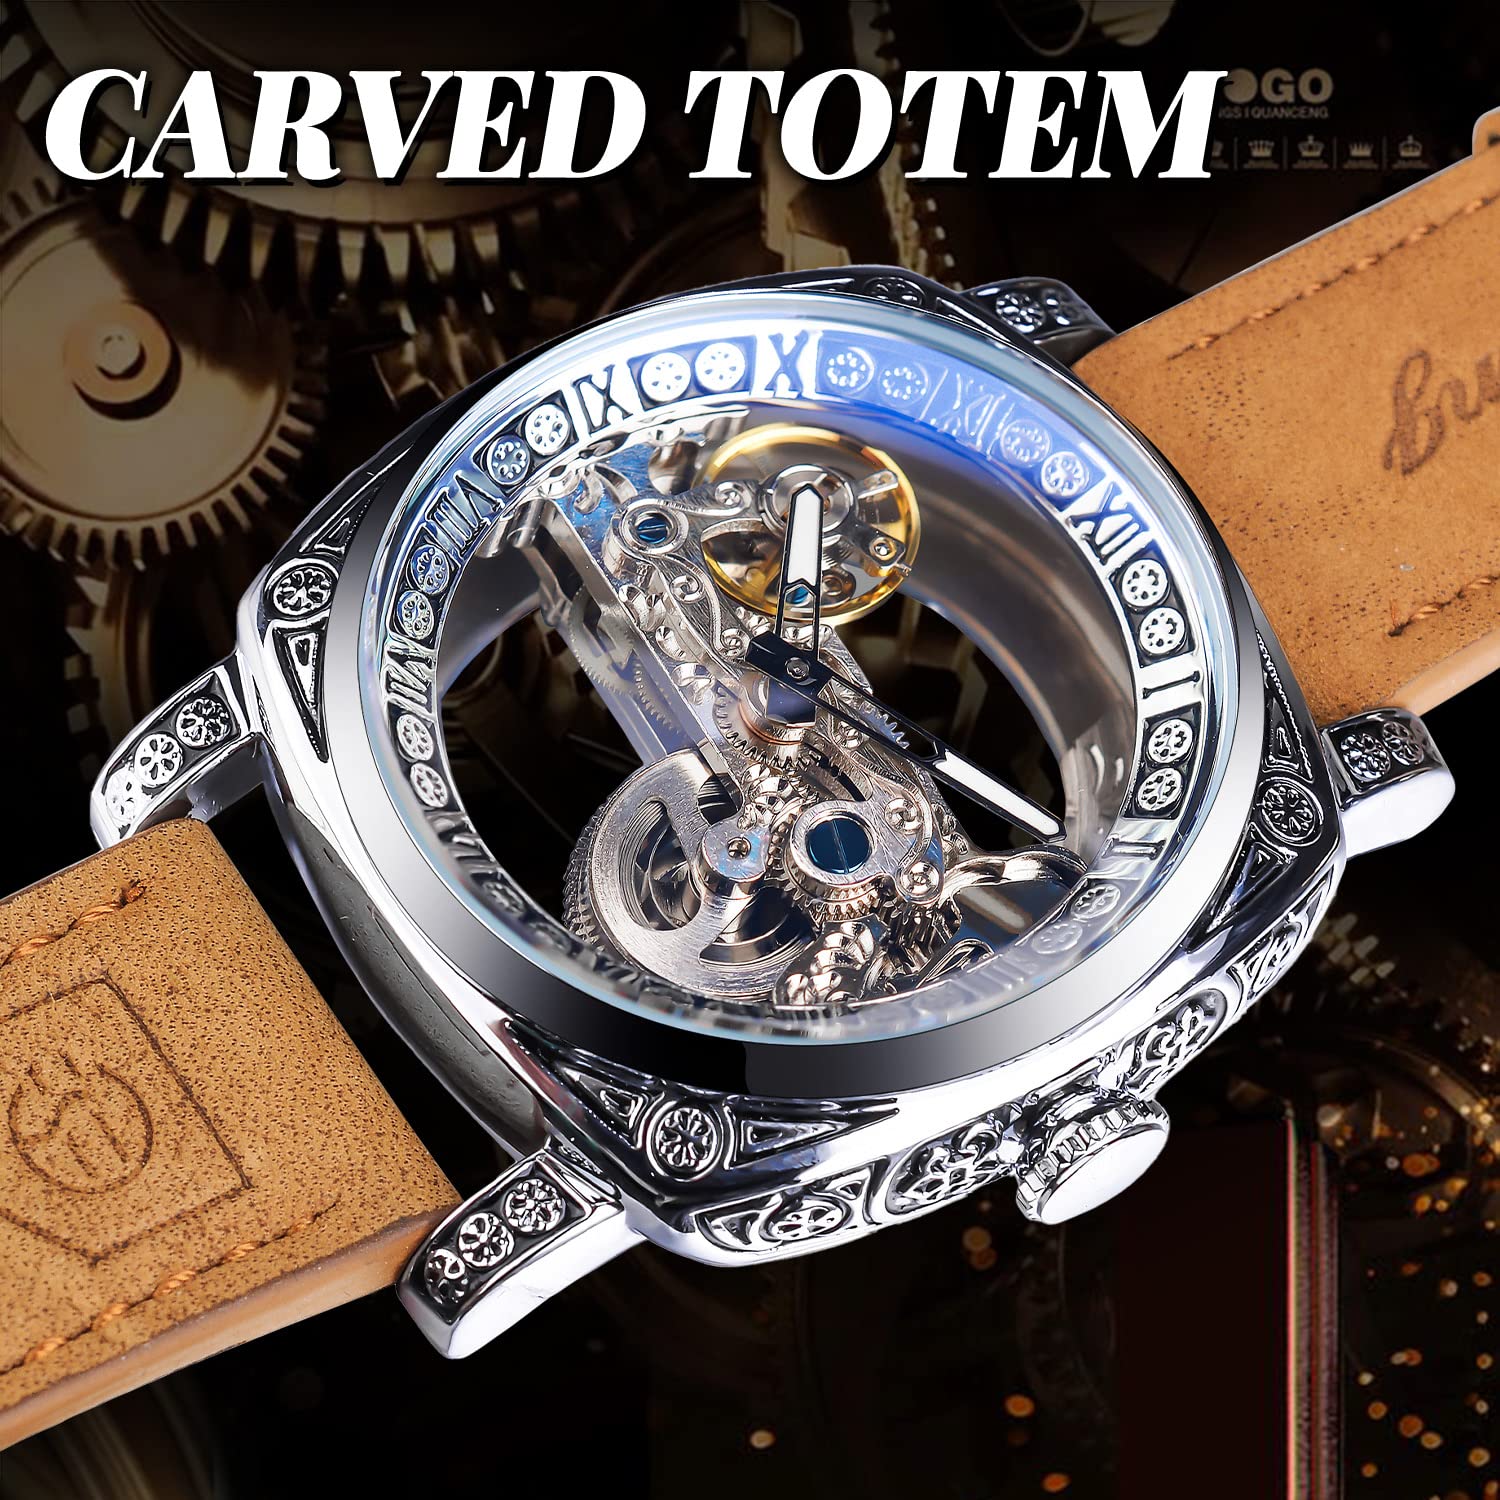 FORSINING Herren Luxus Square Carving Mechanische Uhr Retro Totem Doppelseitig Hohl Skelett Selbstaufzug Automatik Uhren Vintage Lederband Armbanduhr